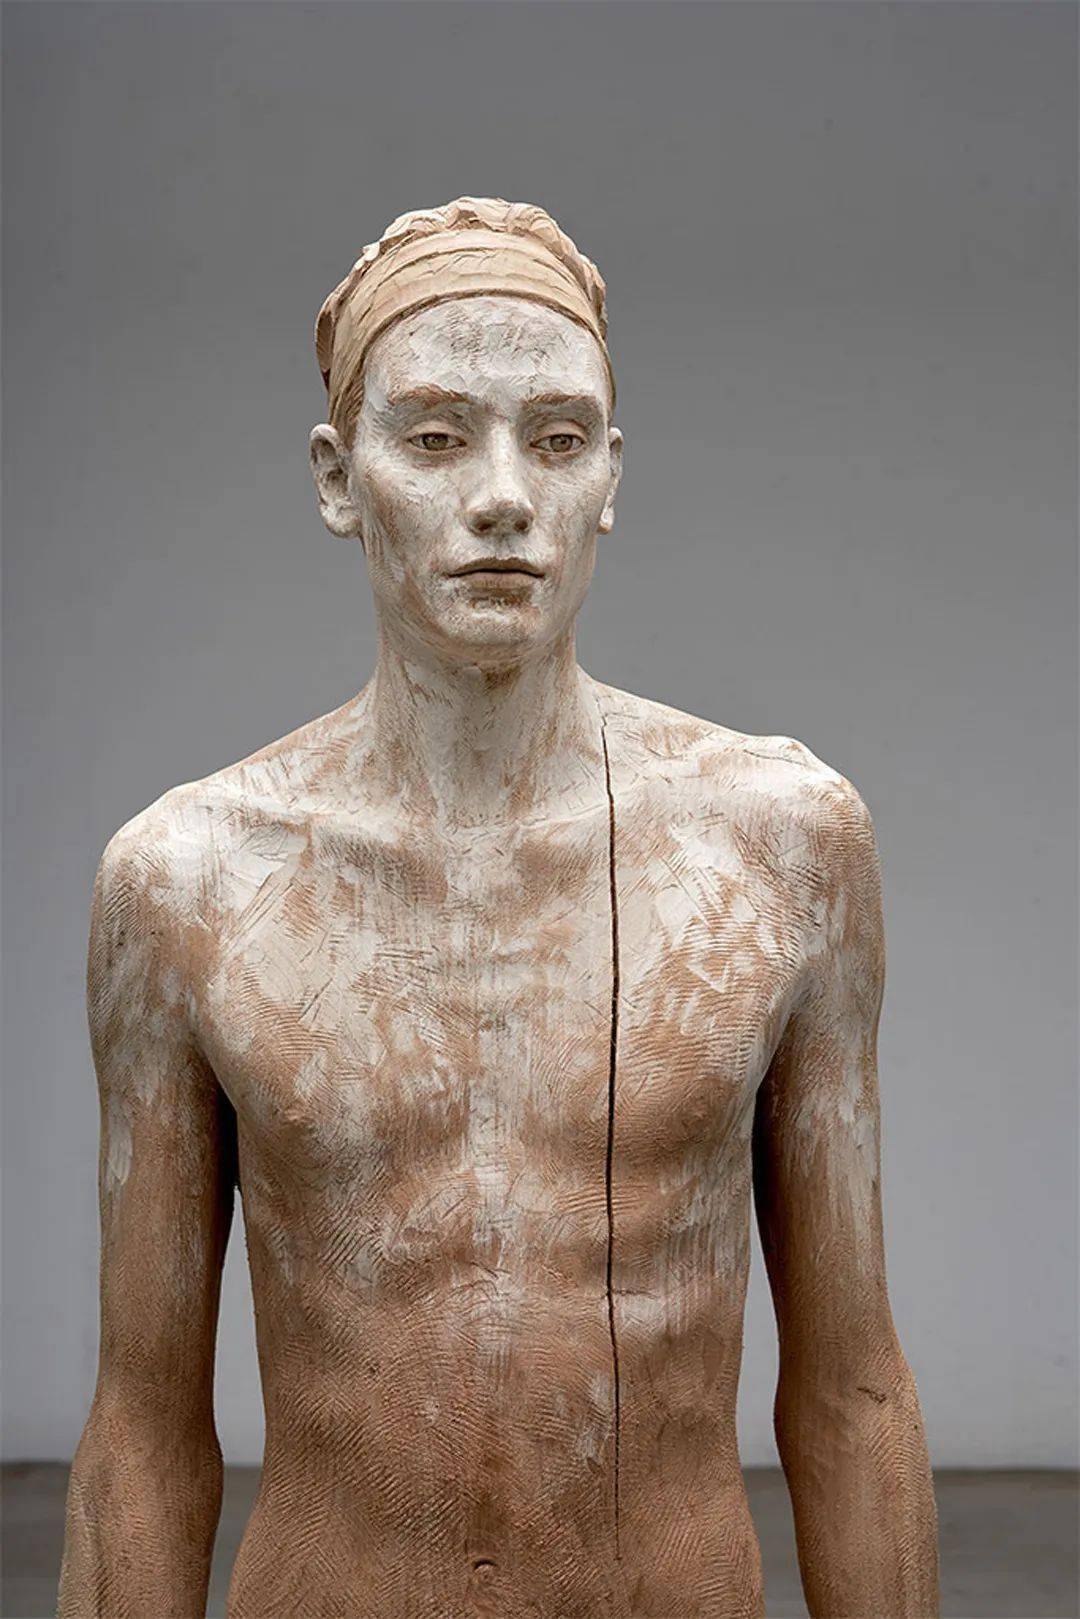 意大利国宝级雕塑家布鲁诺瓦尔波特